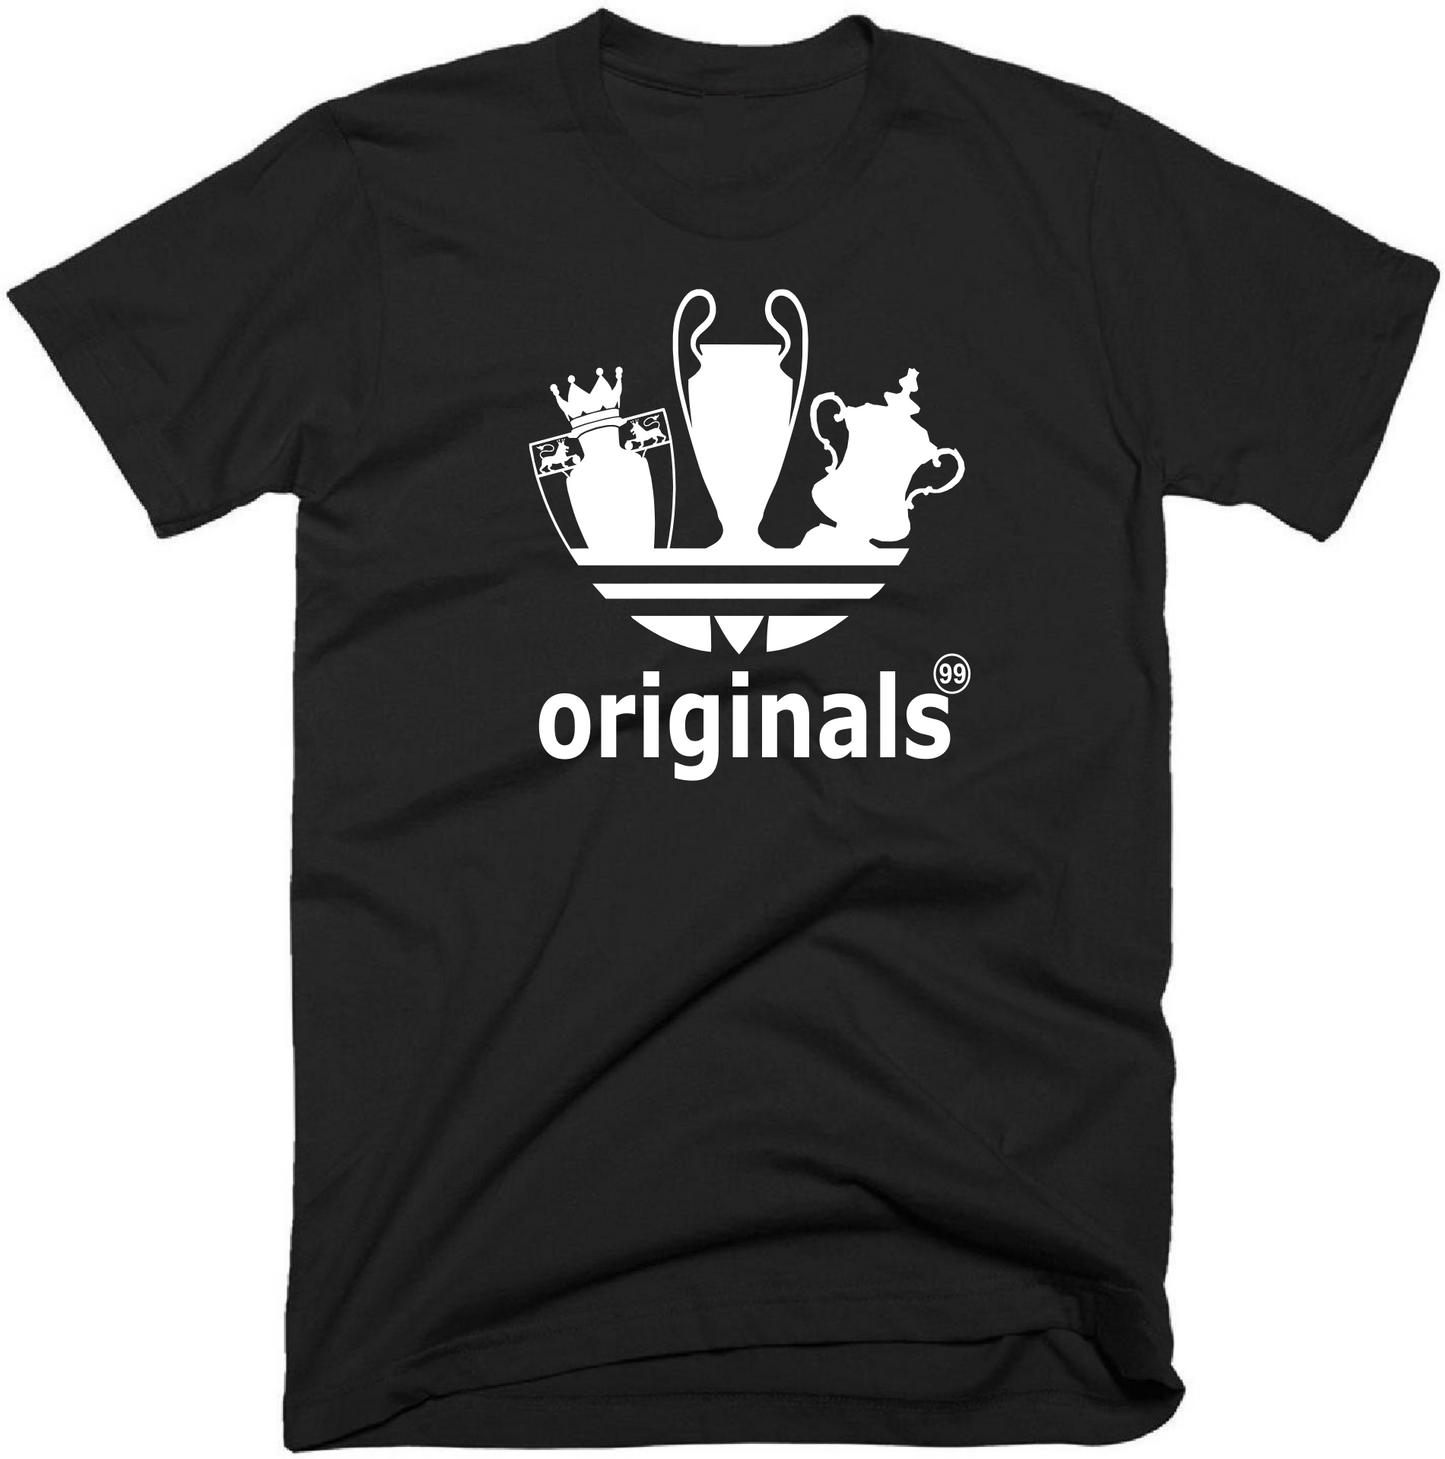 The Treble Originals 99 T-Shirt